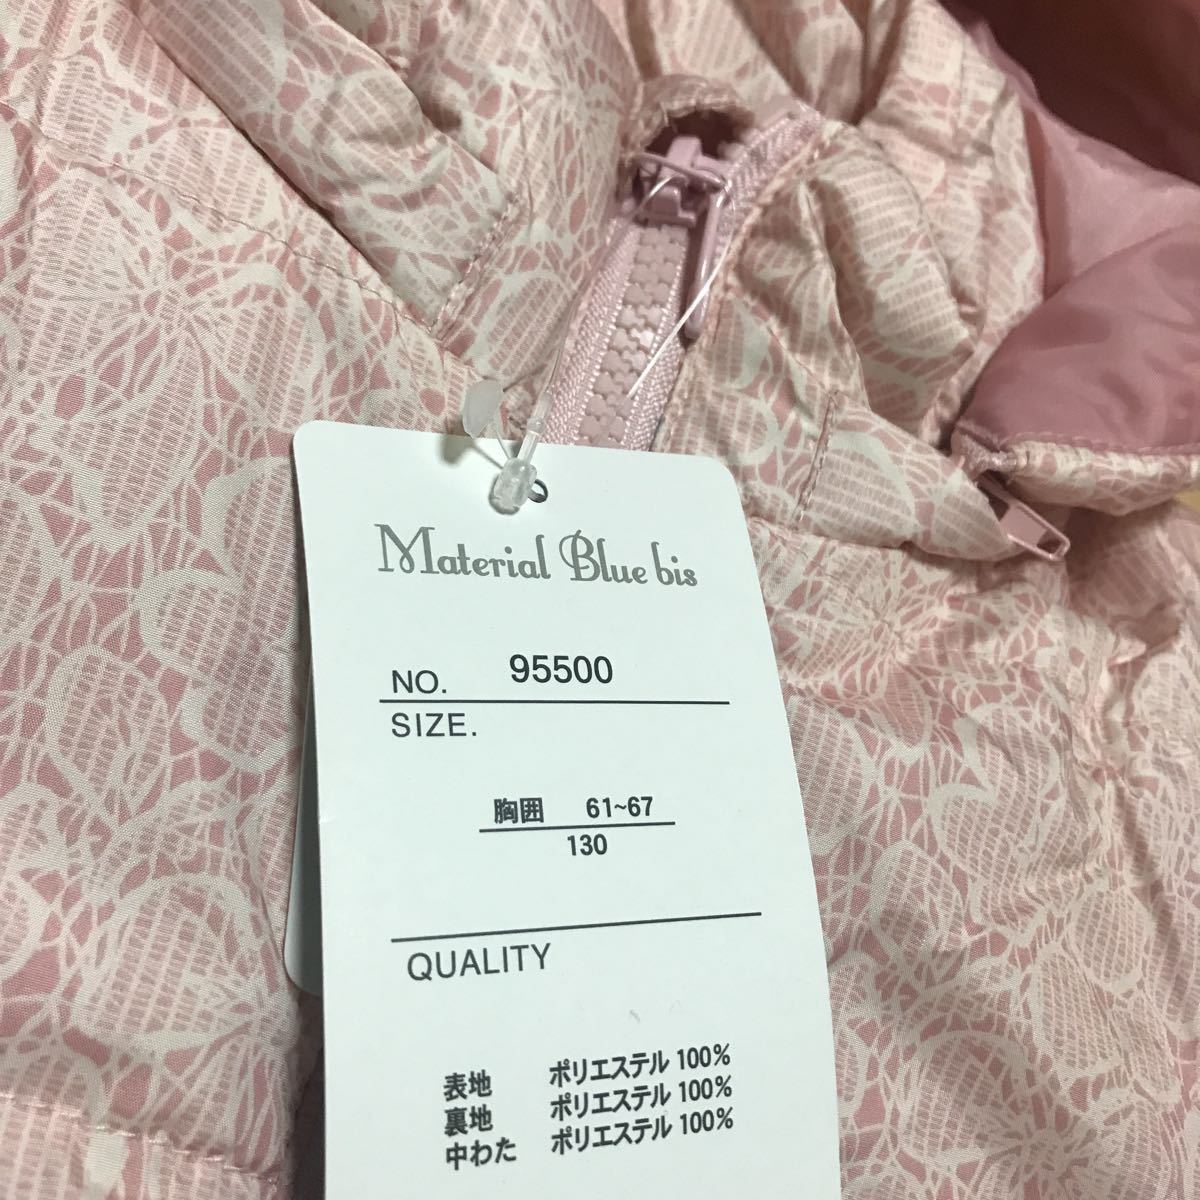  новый товар   неиспользованный товар    пальто   куртка    длинный рукав   130 размер    джемпер  ...  розовый   еда   ... цвет   и 